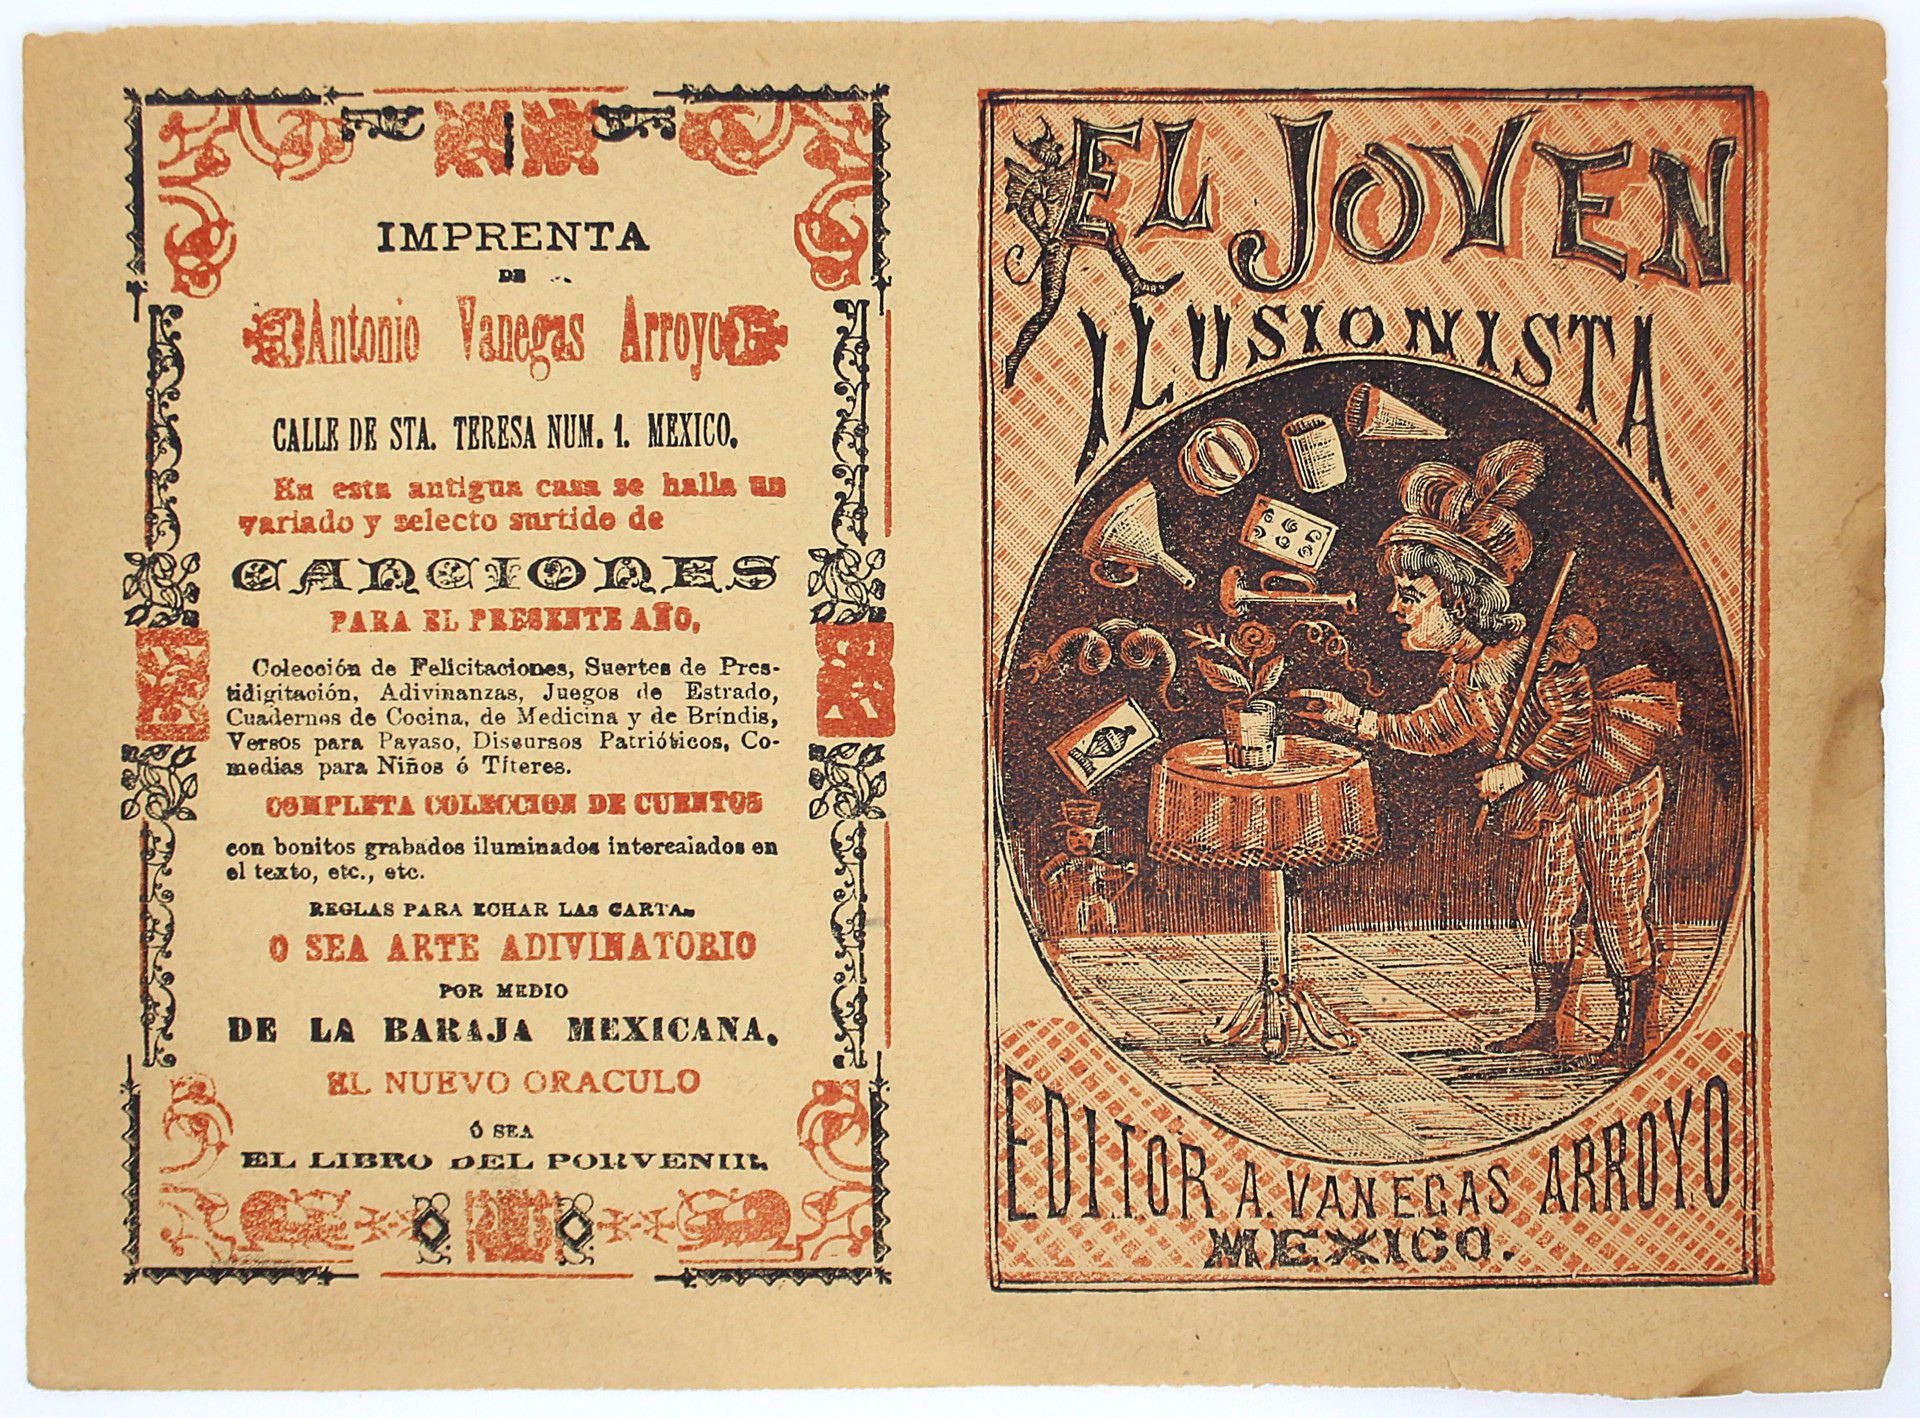 El Joven Ilusionista by Manuel Manilla